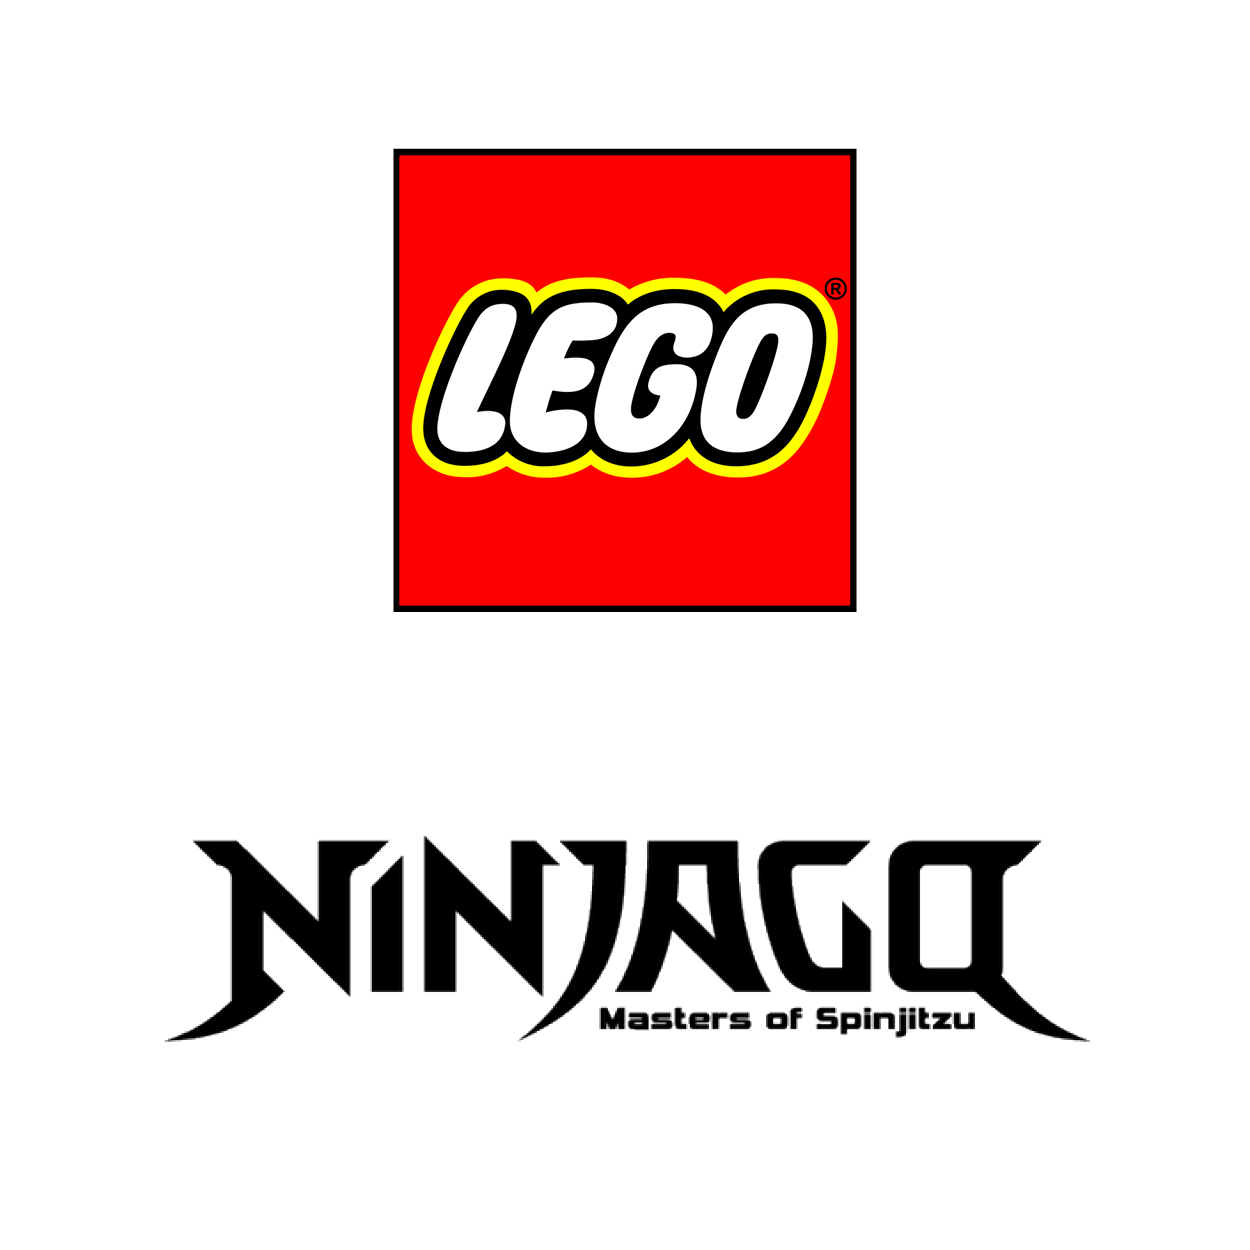 Lego® Ninjago